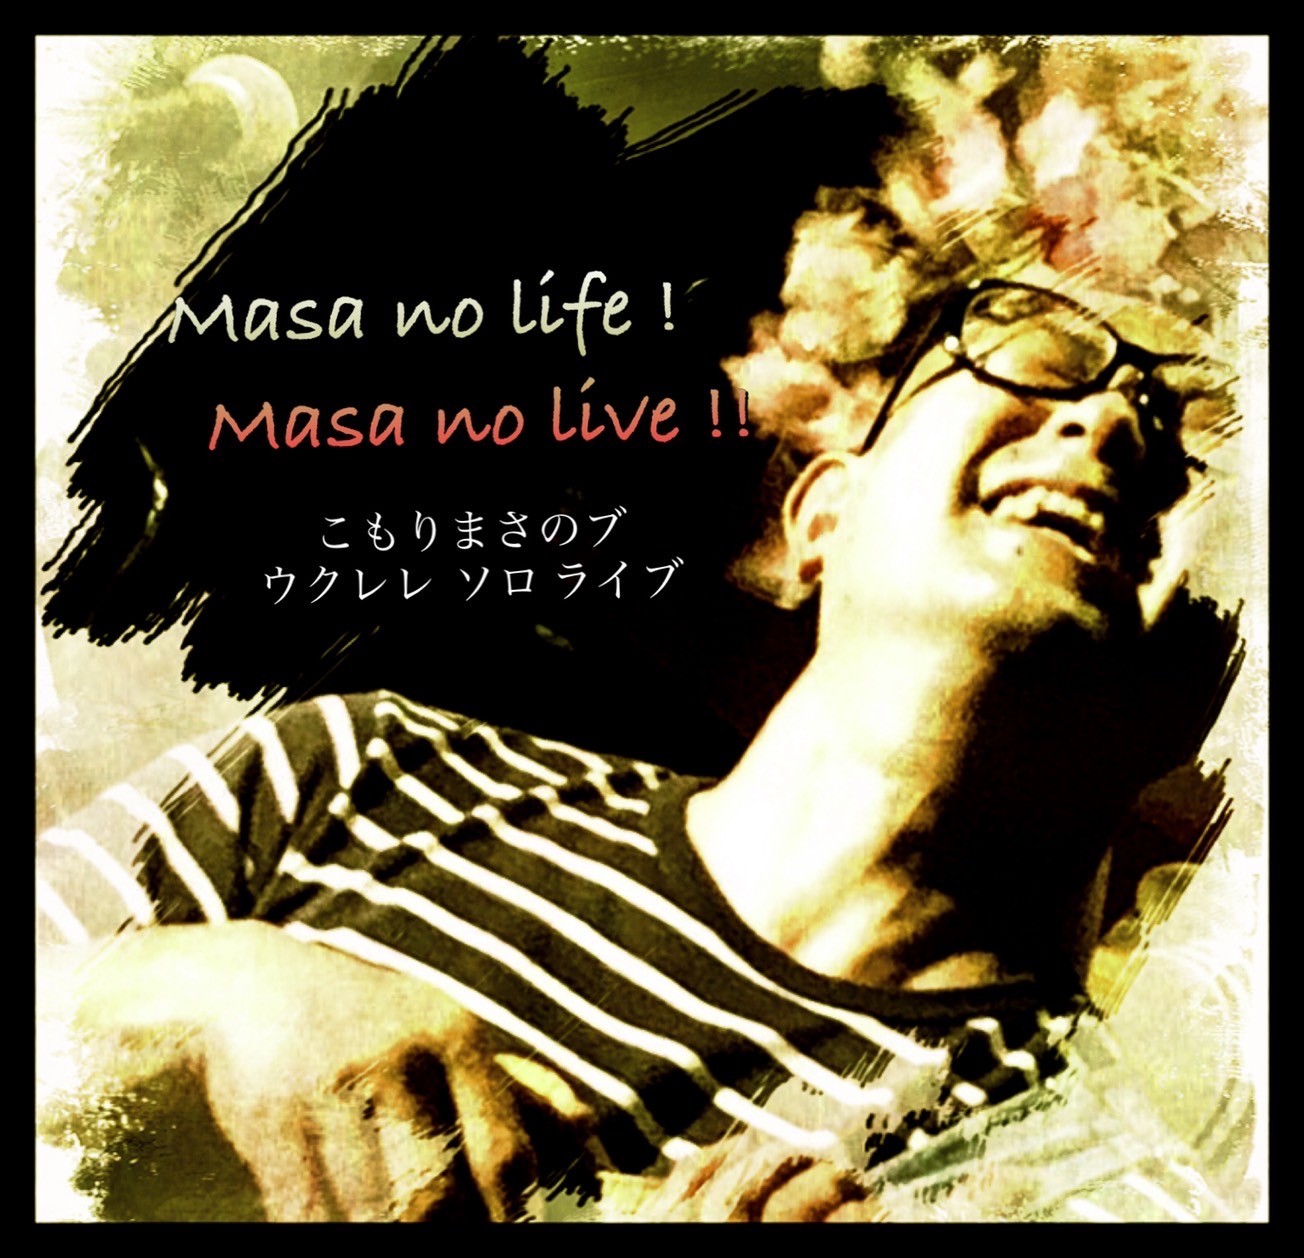 2021.12.11 『Masa no life! Masa no live!!』vol.11